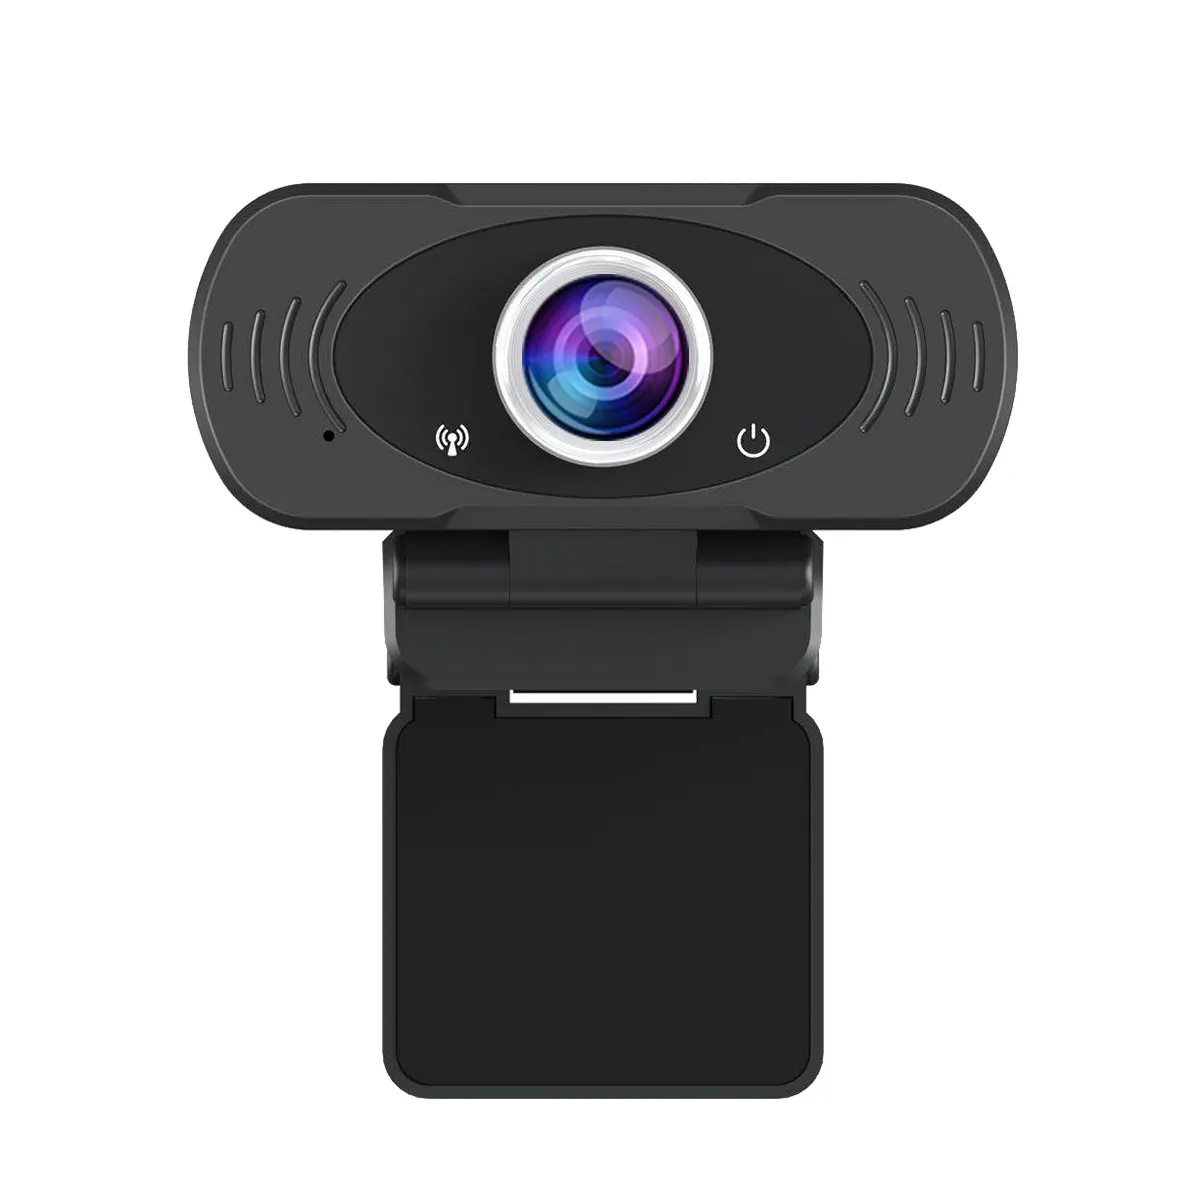 USB ücretsiz sürücü tak ve çalıştır video PC kamera web cam Streaming full hd 1080P Video kamera Webcam mikrofon ile